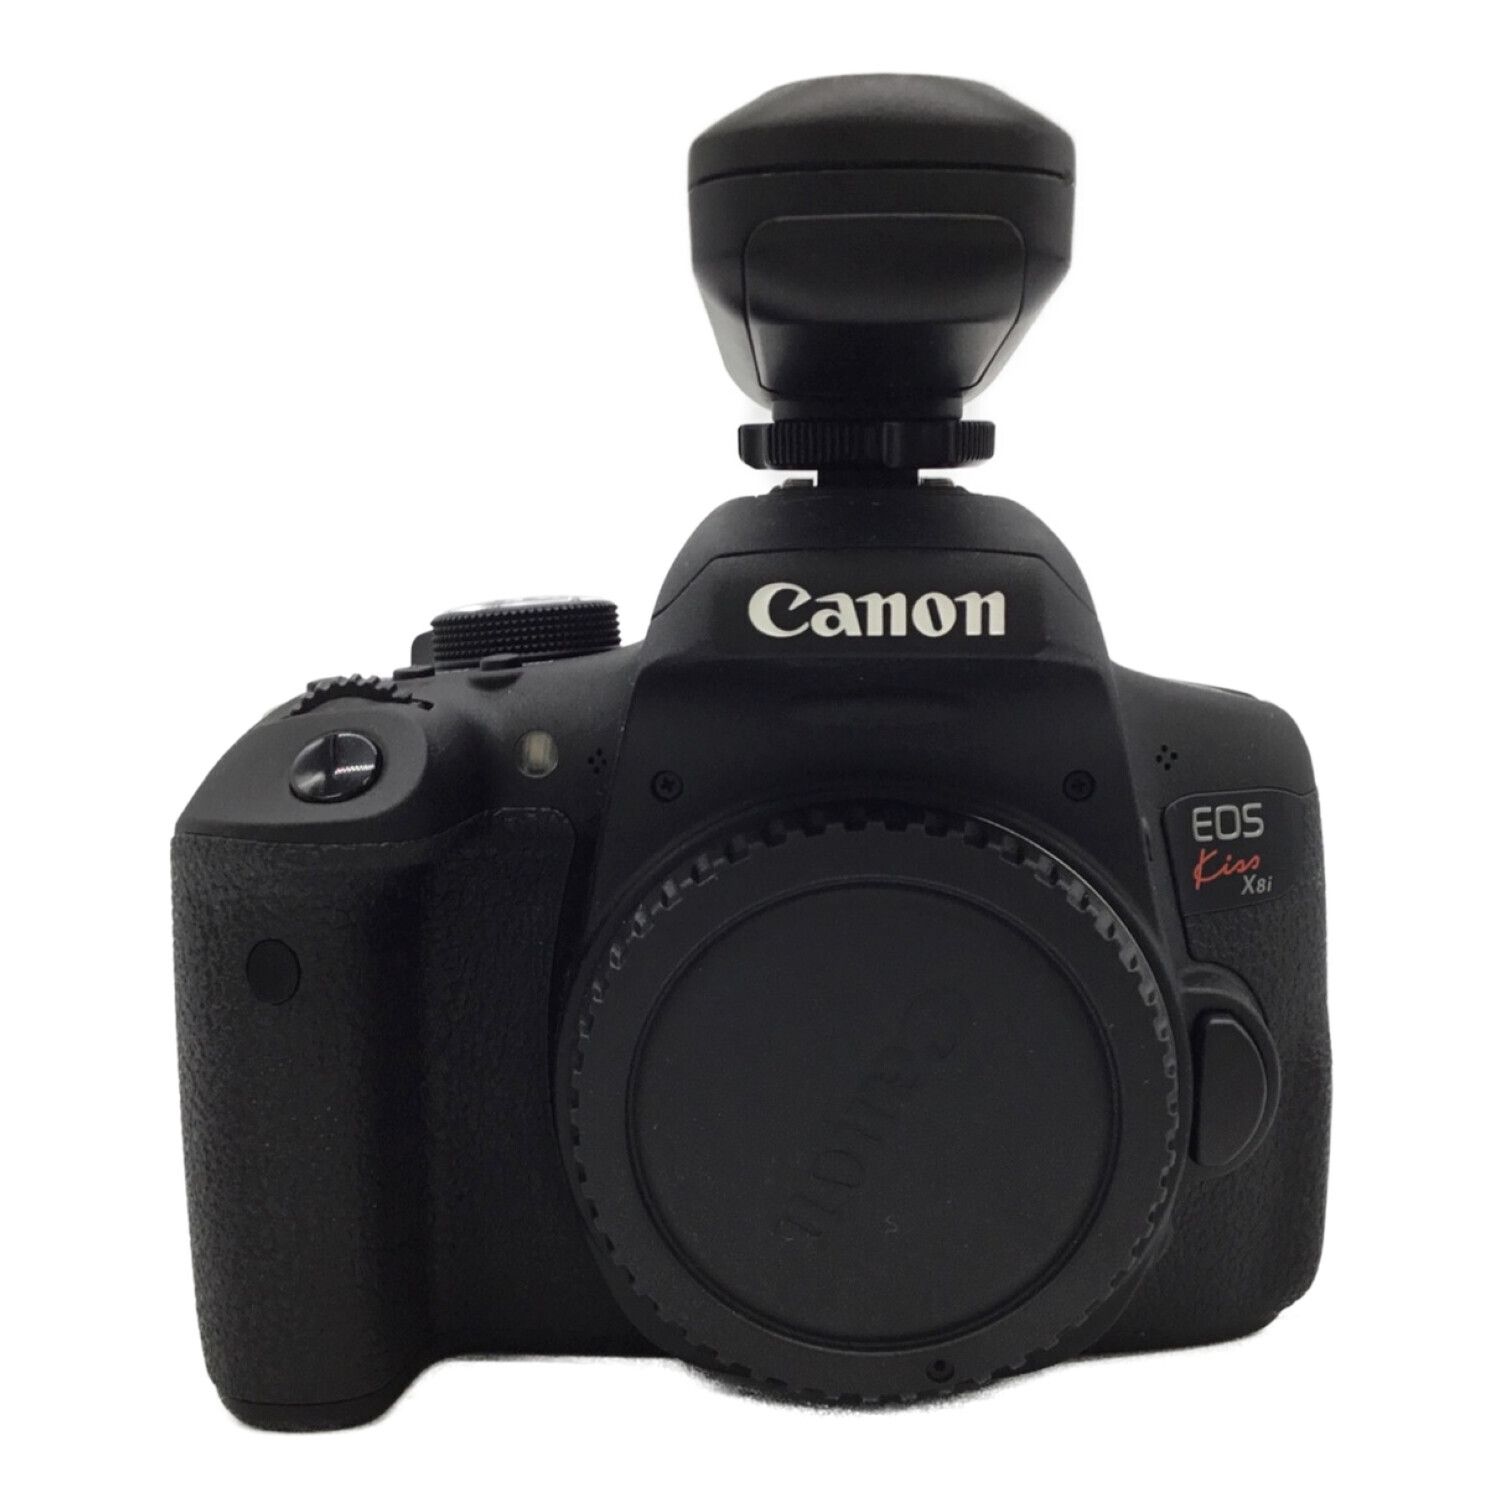 Canonキャノン色Canon キャノン カメラ レンズセット Eos kiss x8i バッテリー